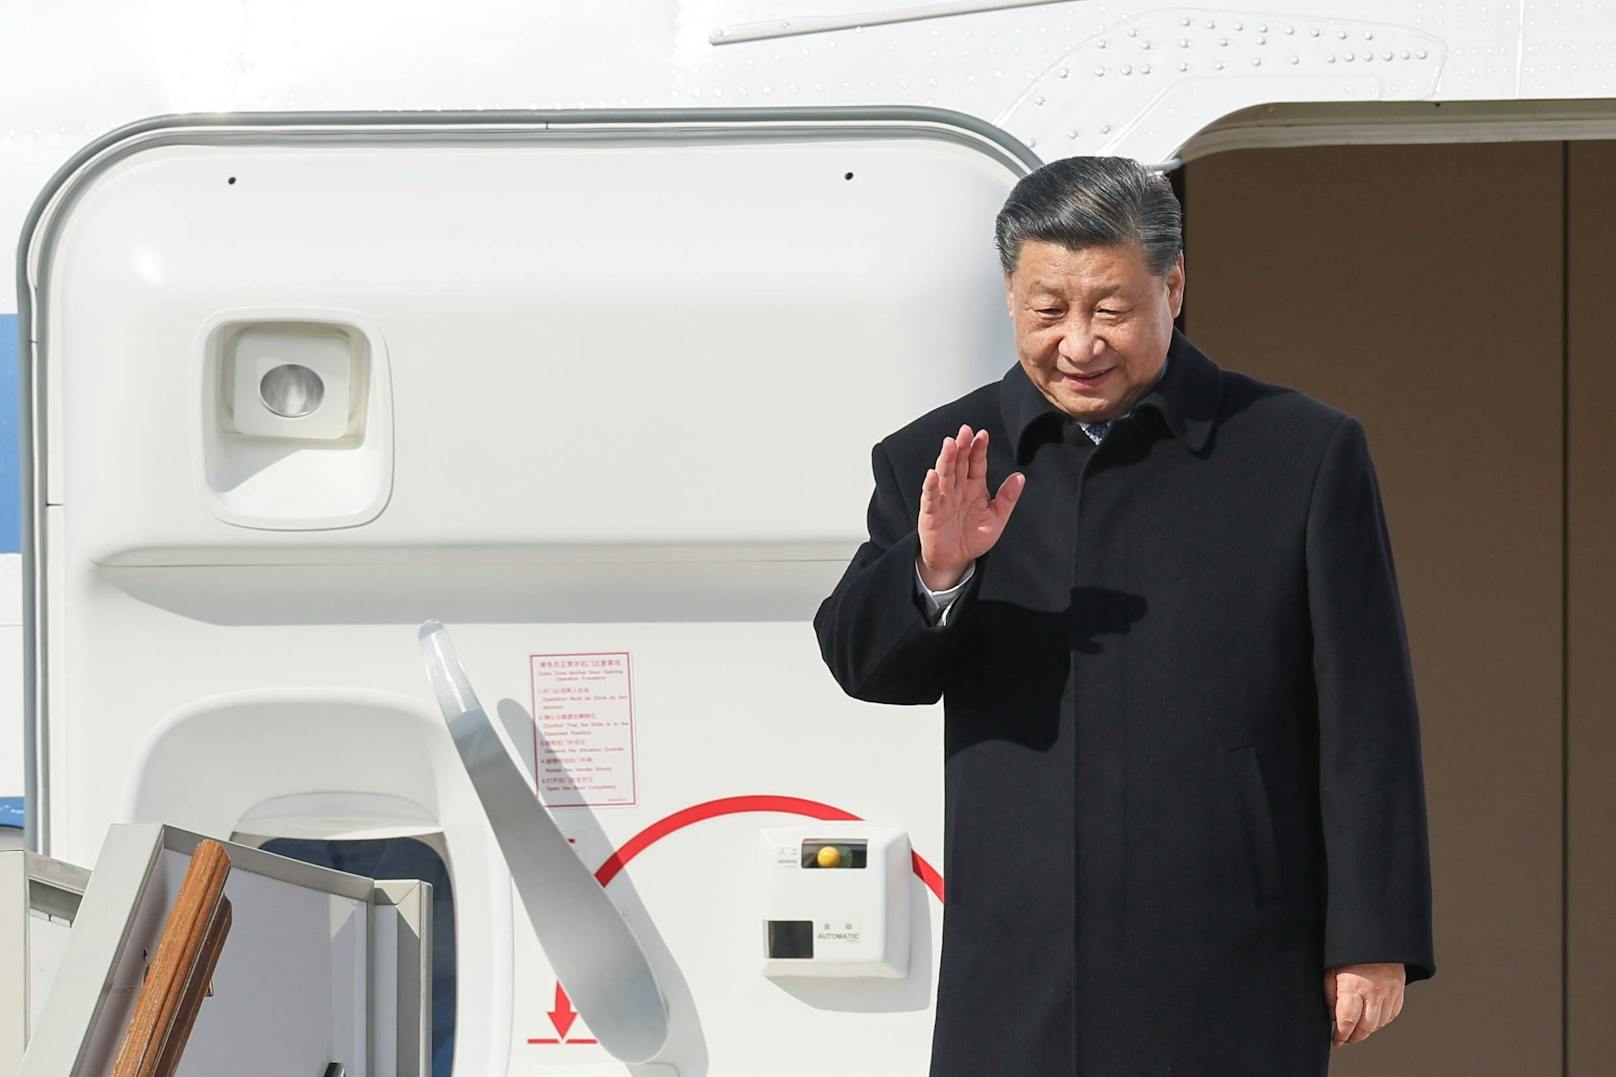 Der chinesische Präsident Xi Jinping zu Besuch bei Wladimir Putin.